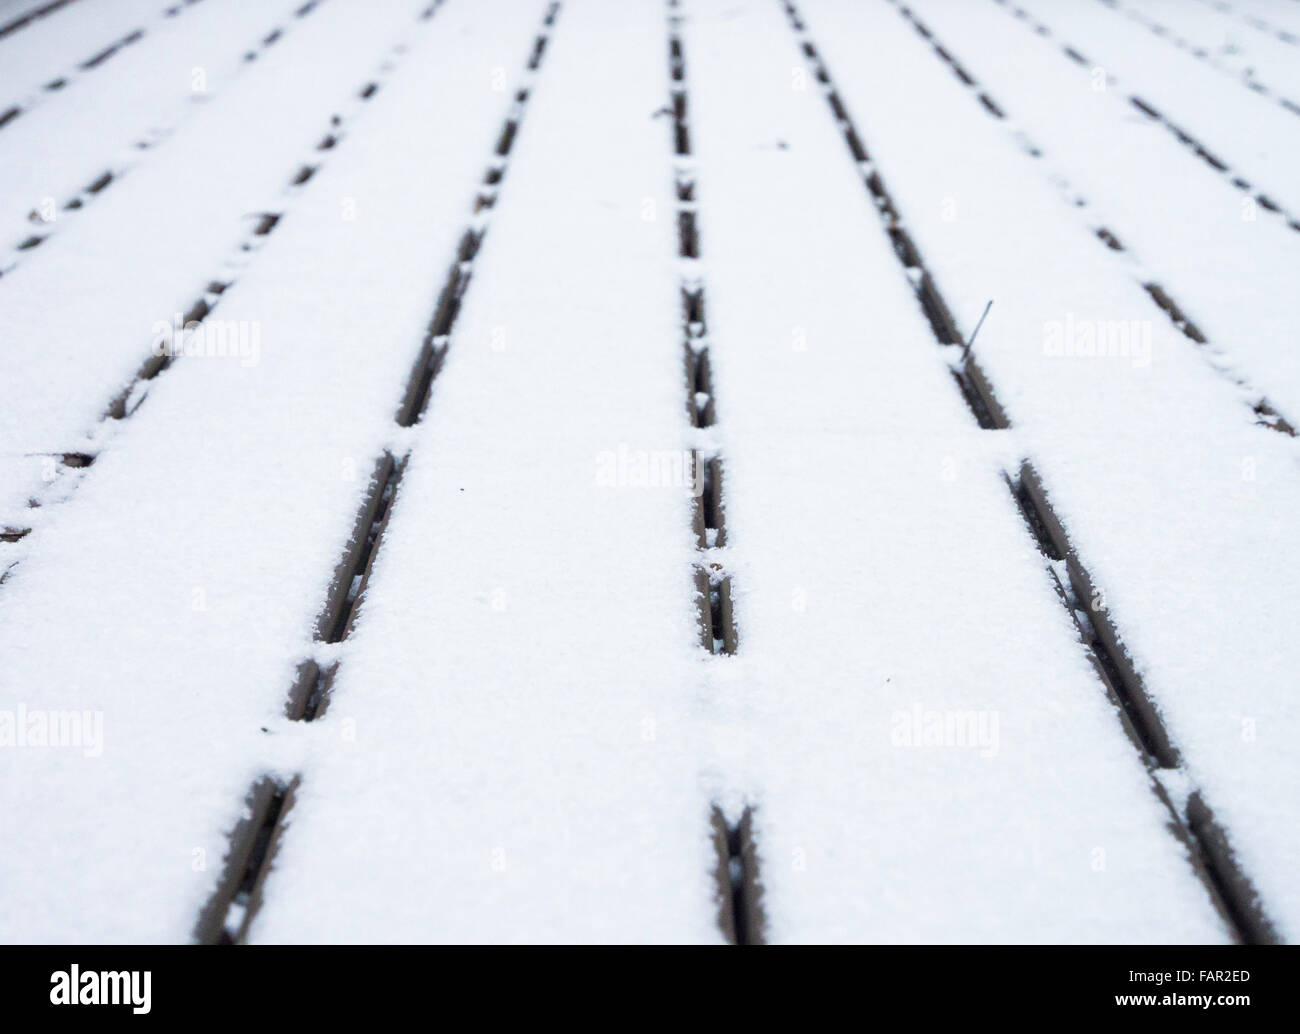 Ponte di legno ricoperta di neve e le linee convergenti con profondità di campo ridotta. Foto Stock